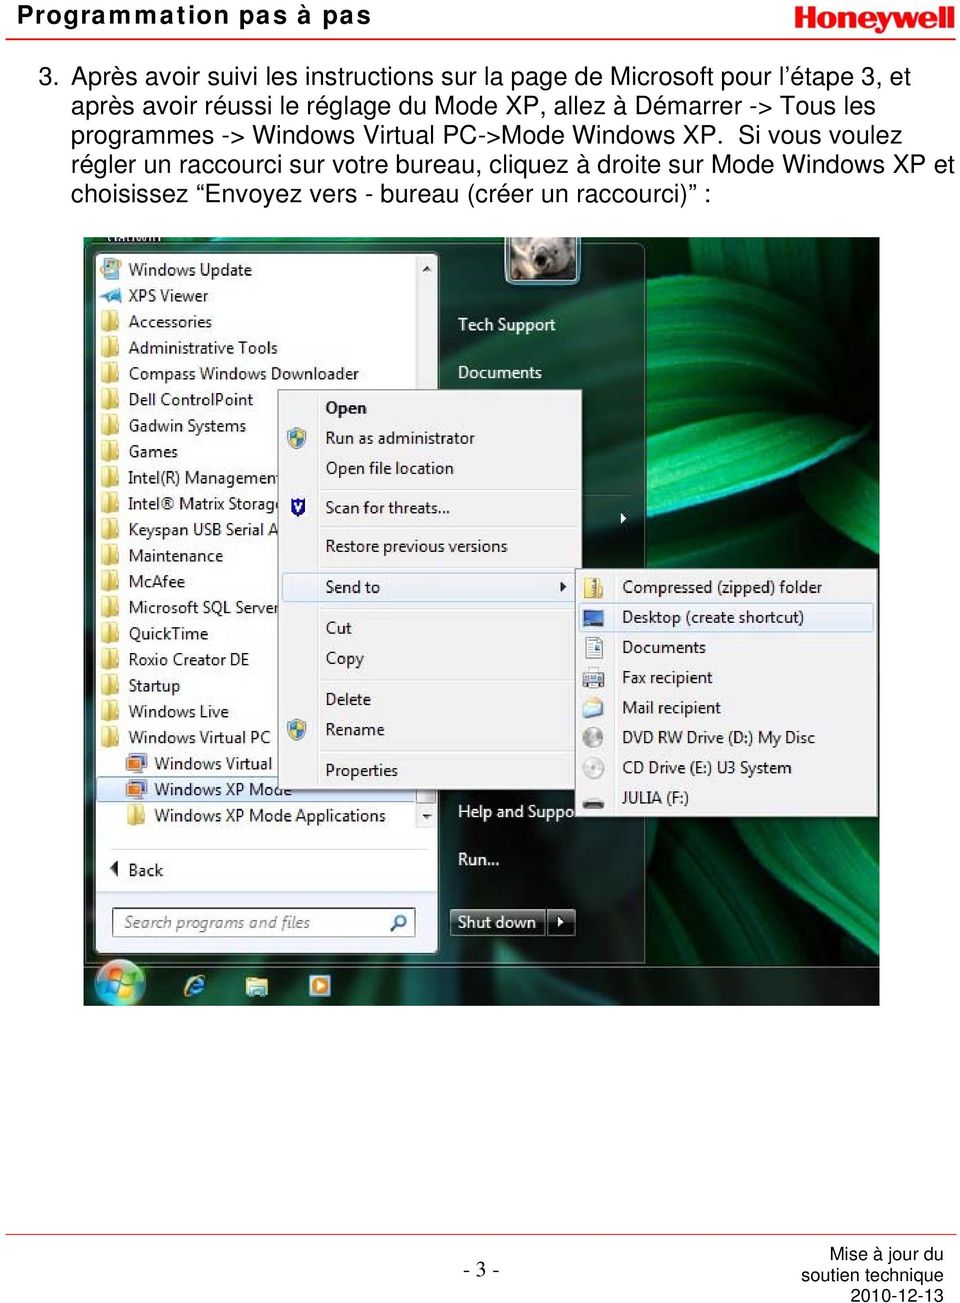 Virtual PC->Mode Windows XP.